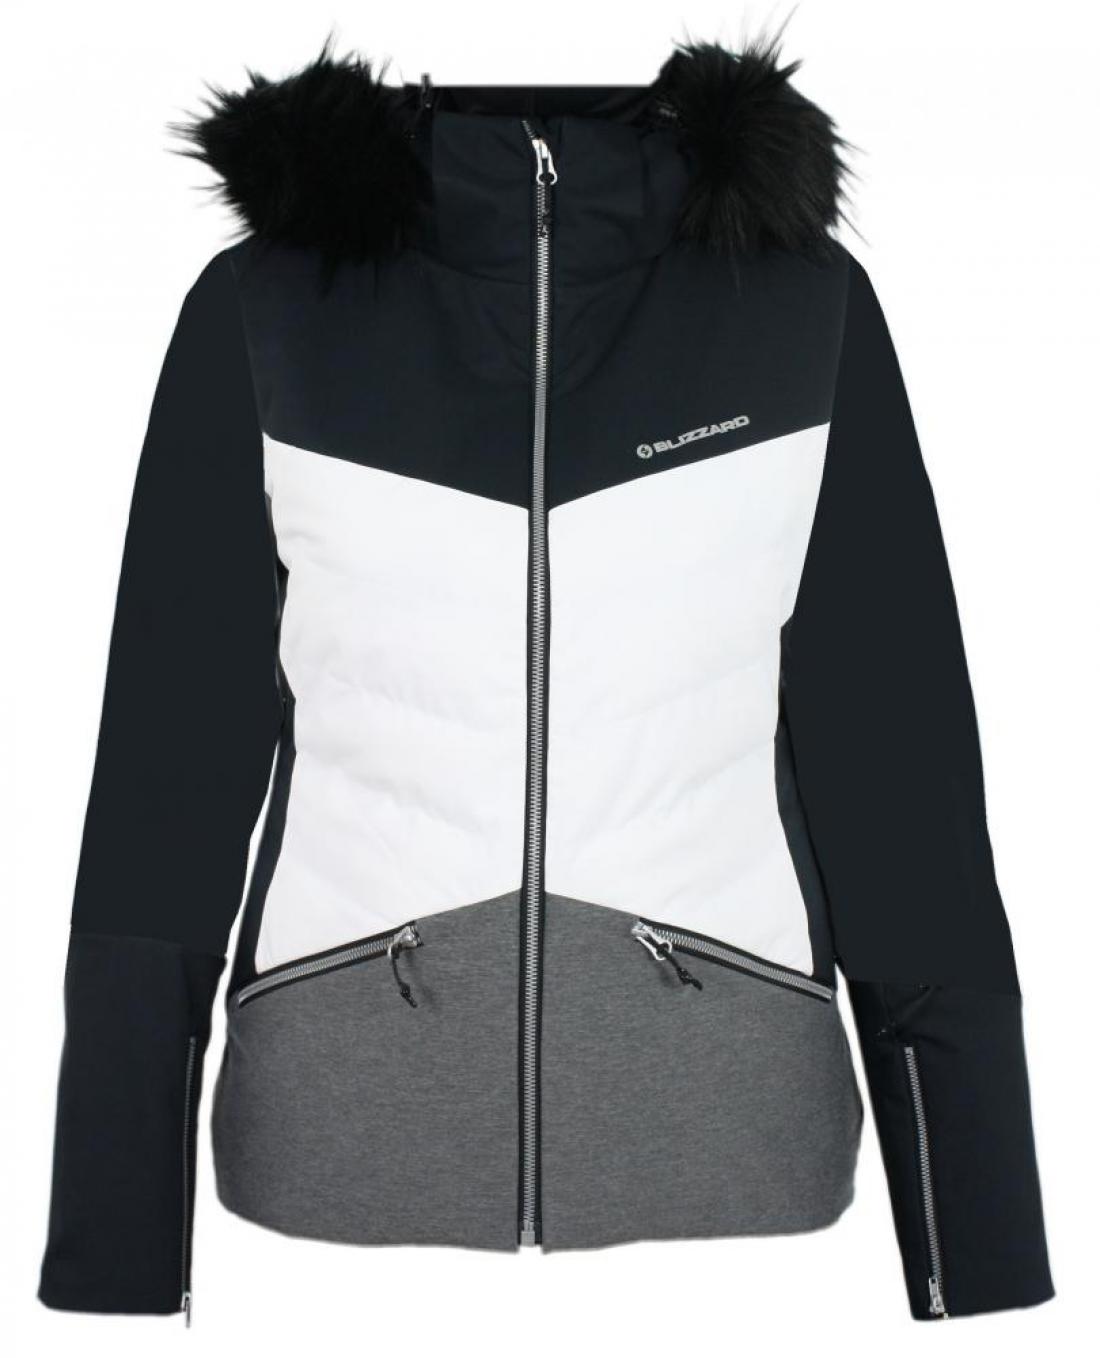 Viva Ski Jacket Grace, white/black/melange